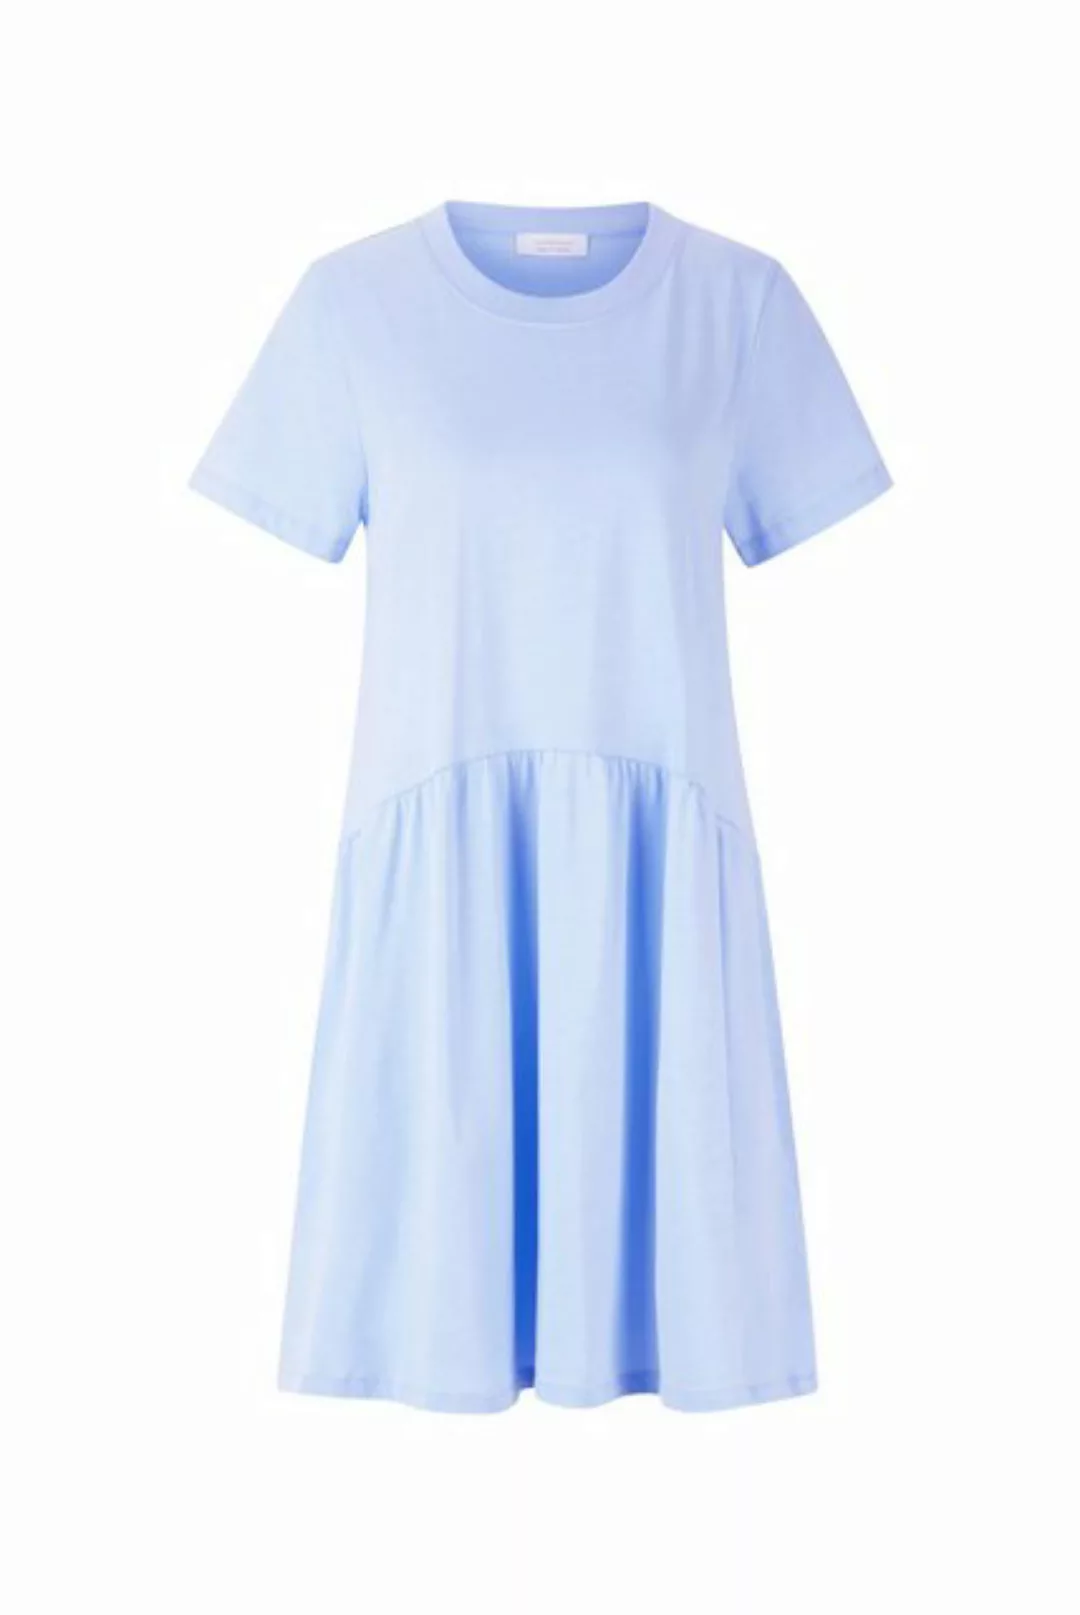 Rich & Royal Sommerkleid T-Shirt dress organic, cotton blue günstig online kaufen